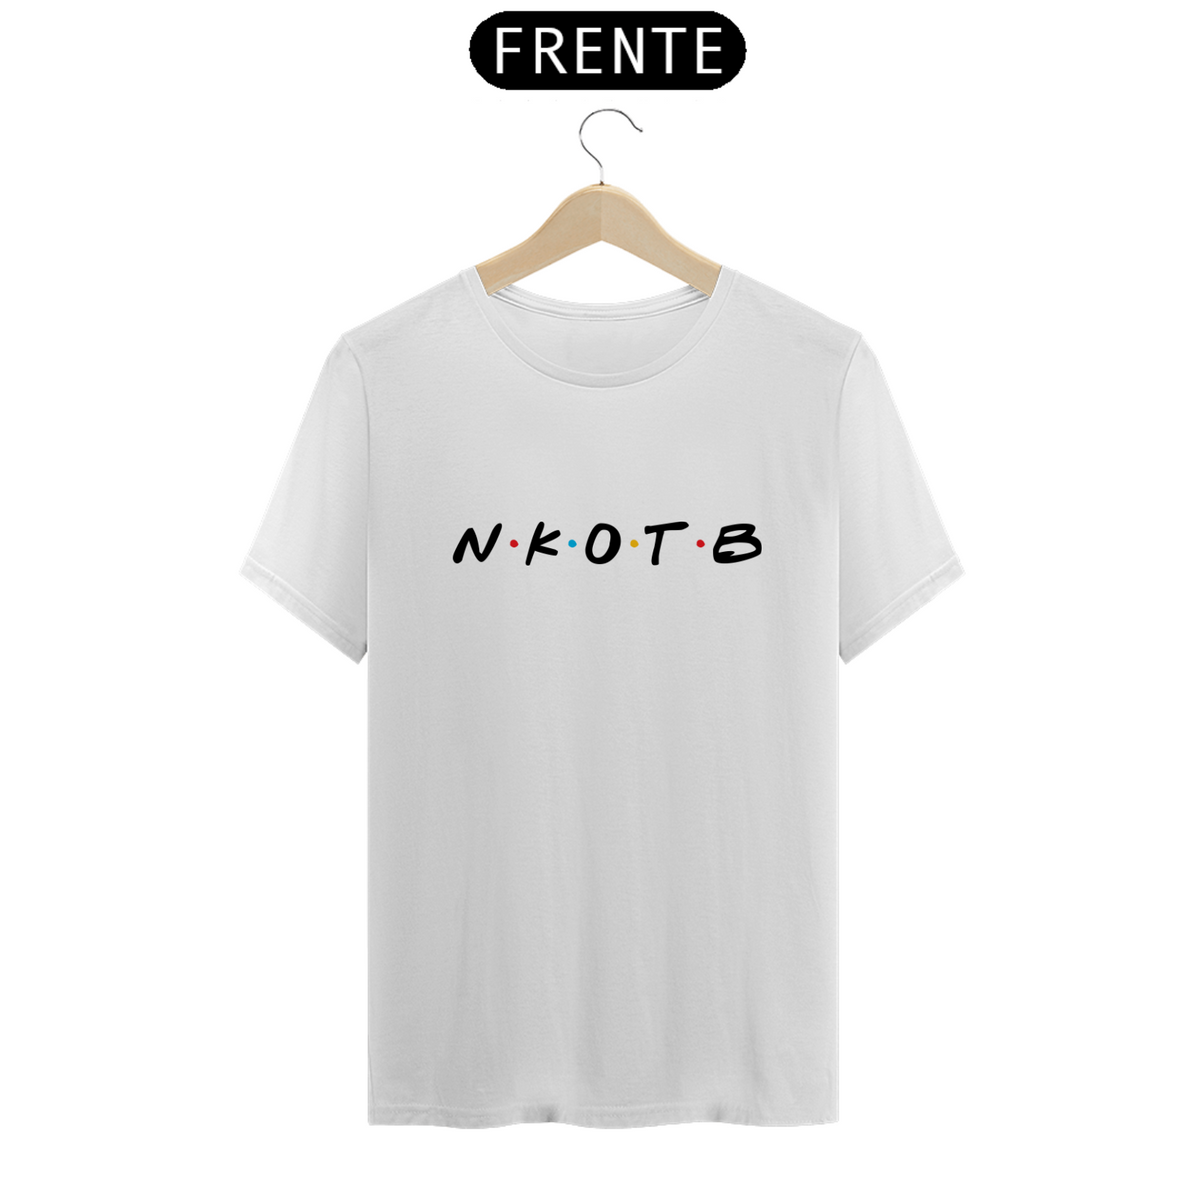 Nome do produto: Camiseta  NKOTB